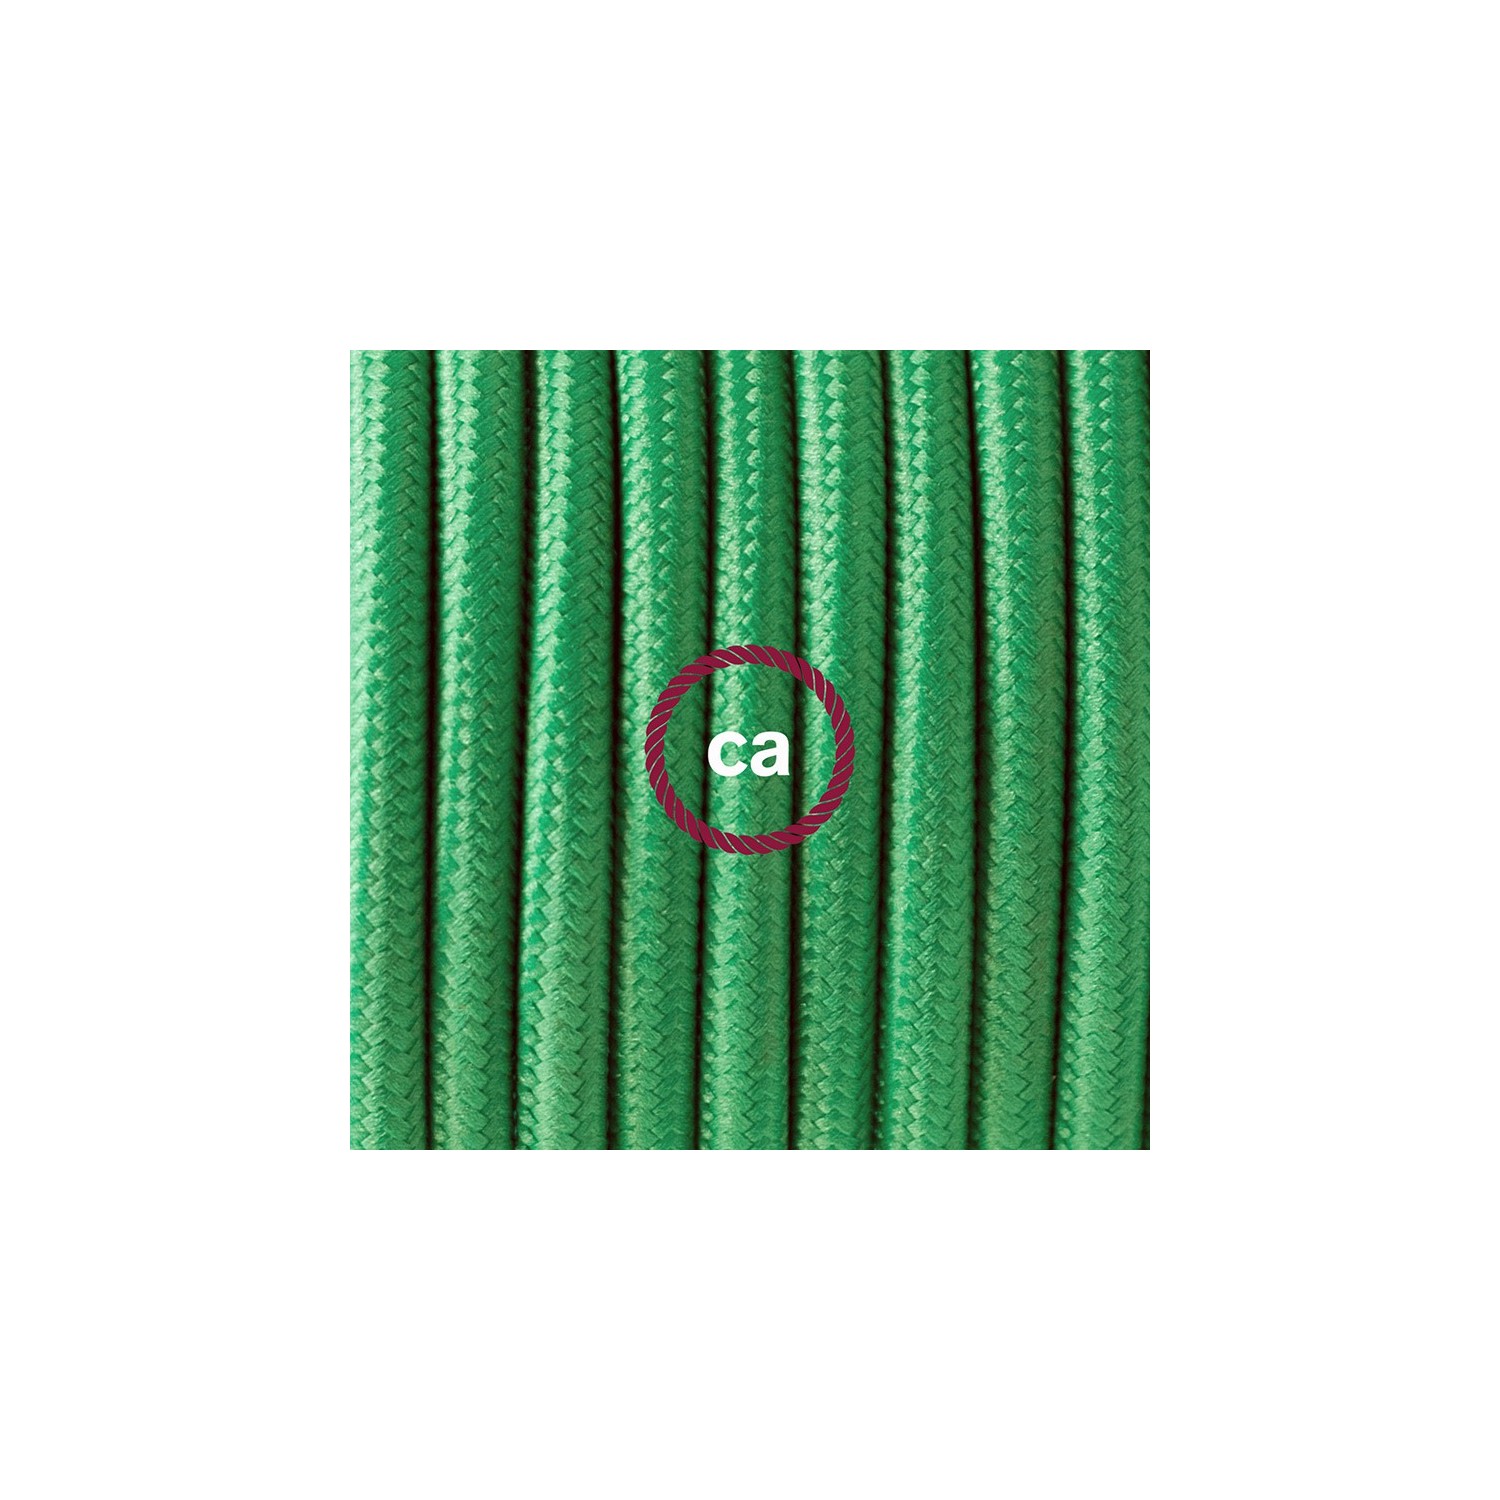 Sladdställ med fotströmbrytare, RM06 Grön Viskos 3 m. Välj färg på strömbrytare och kontakt